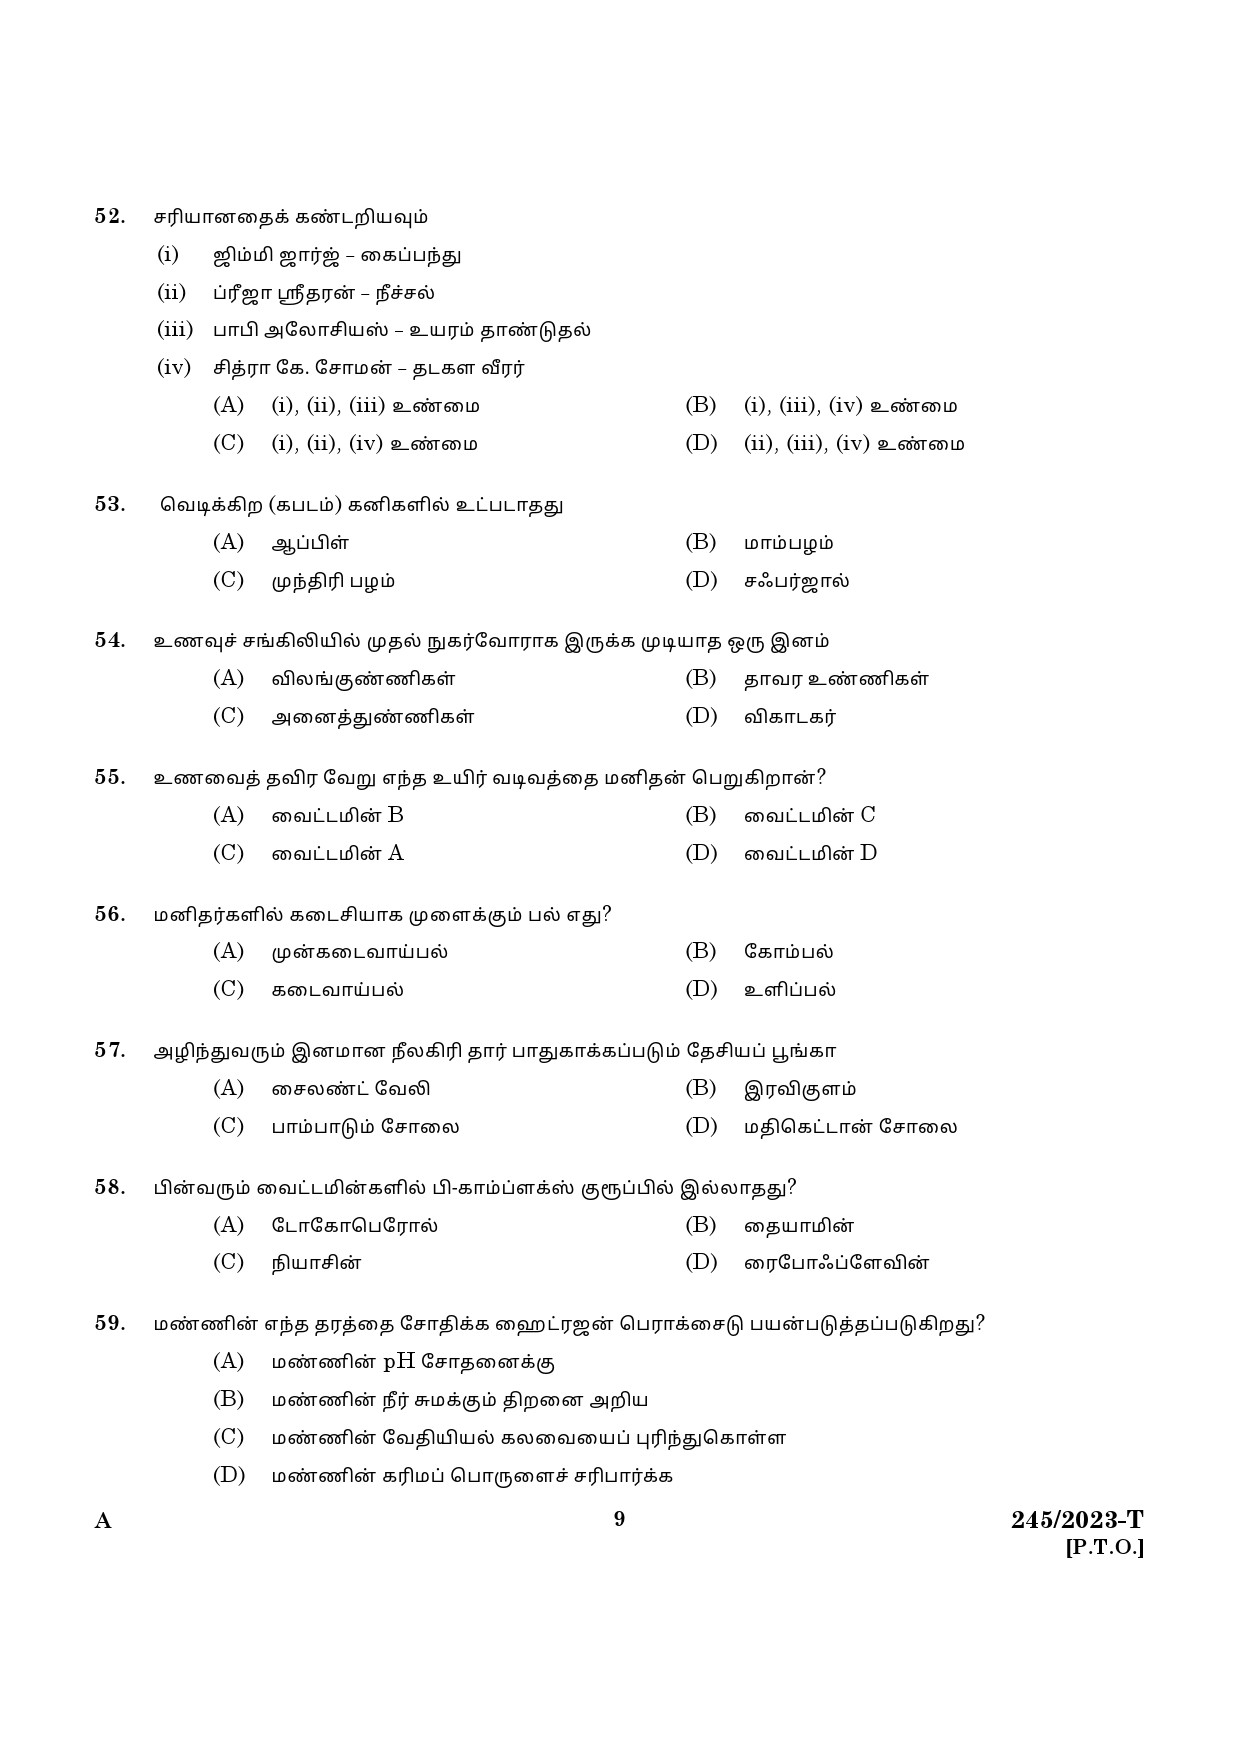 KPSC LGS Tamil Exam 2023 Code 2452023 T 7